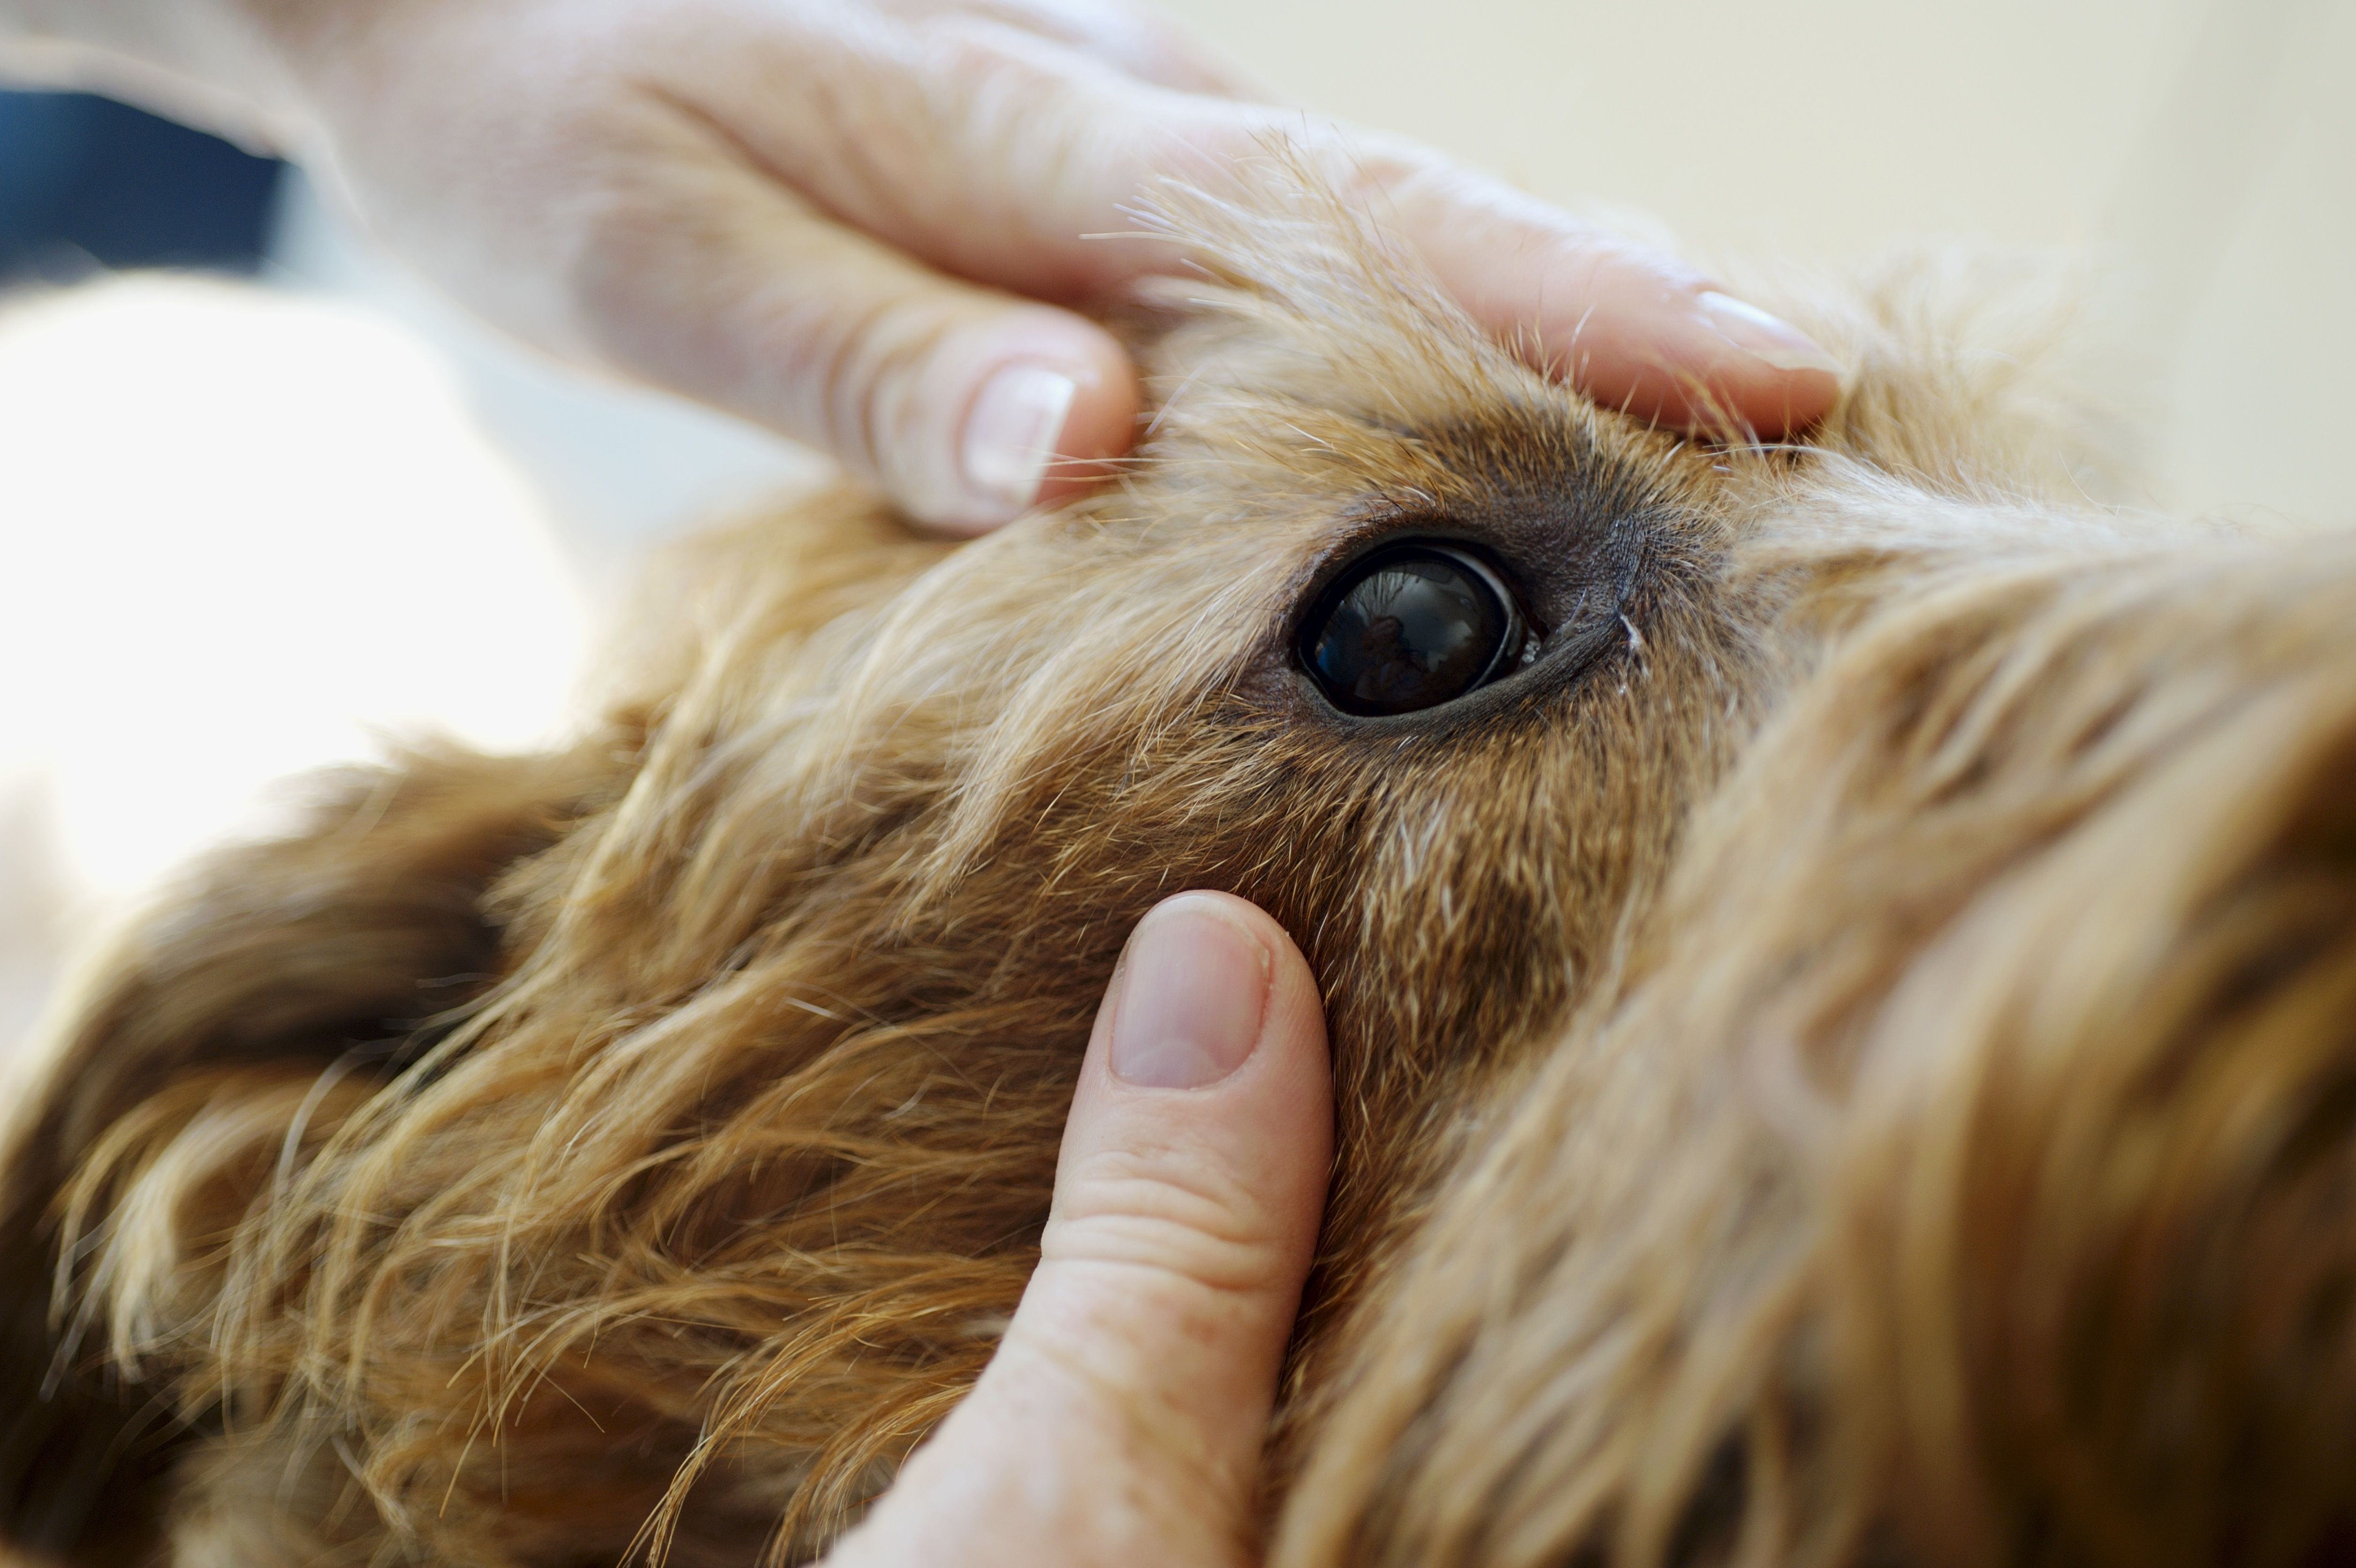 Vet checking eye of dog using hands to pull fur back